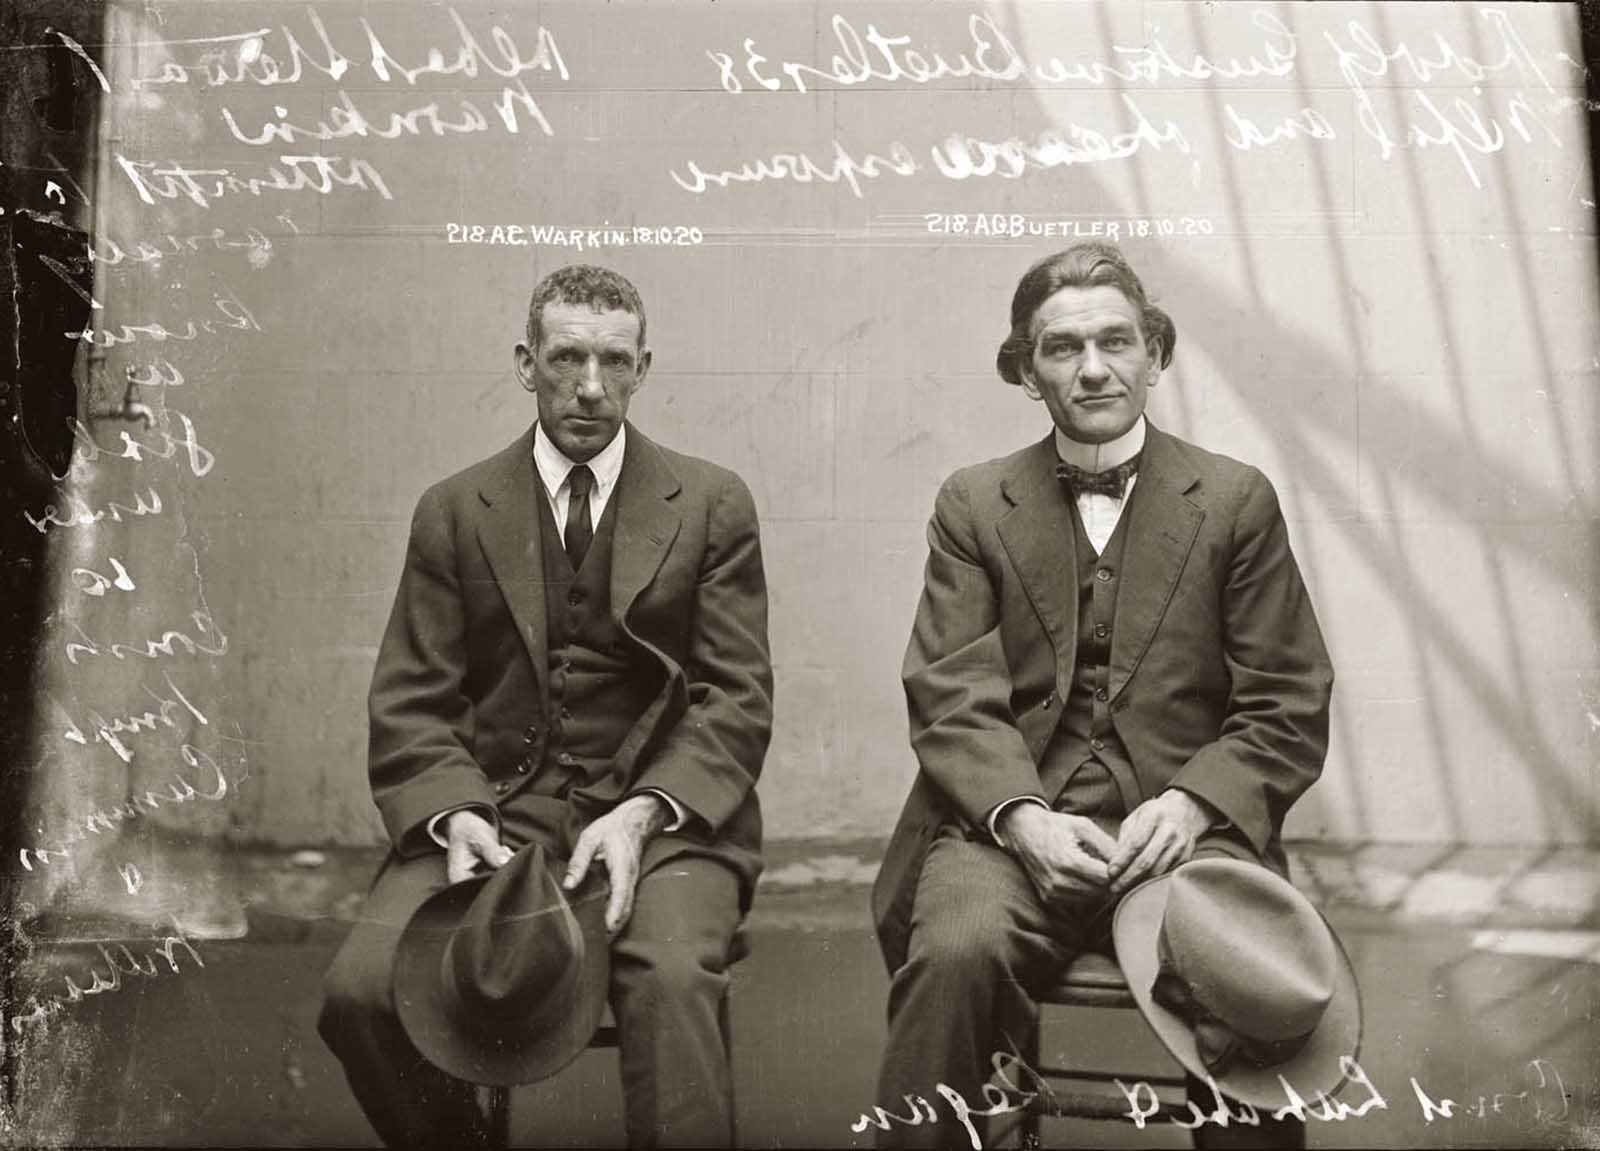 Albert Stewart Warnkin and Adolf Gustave Beutler.1920.